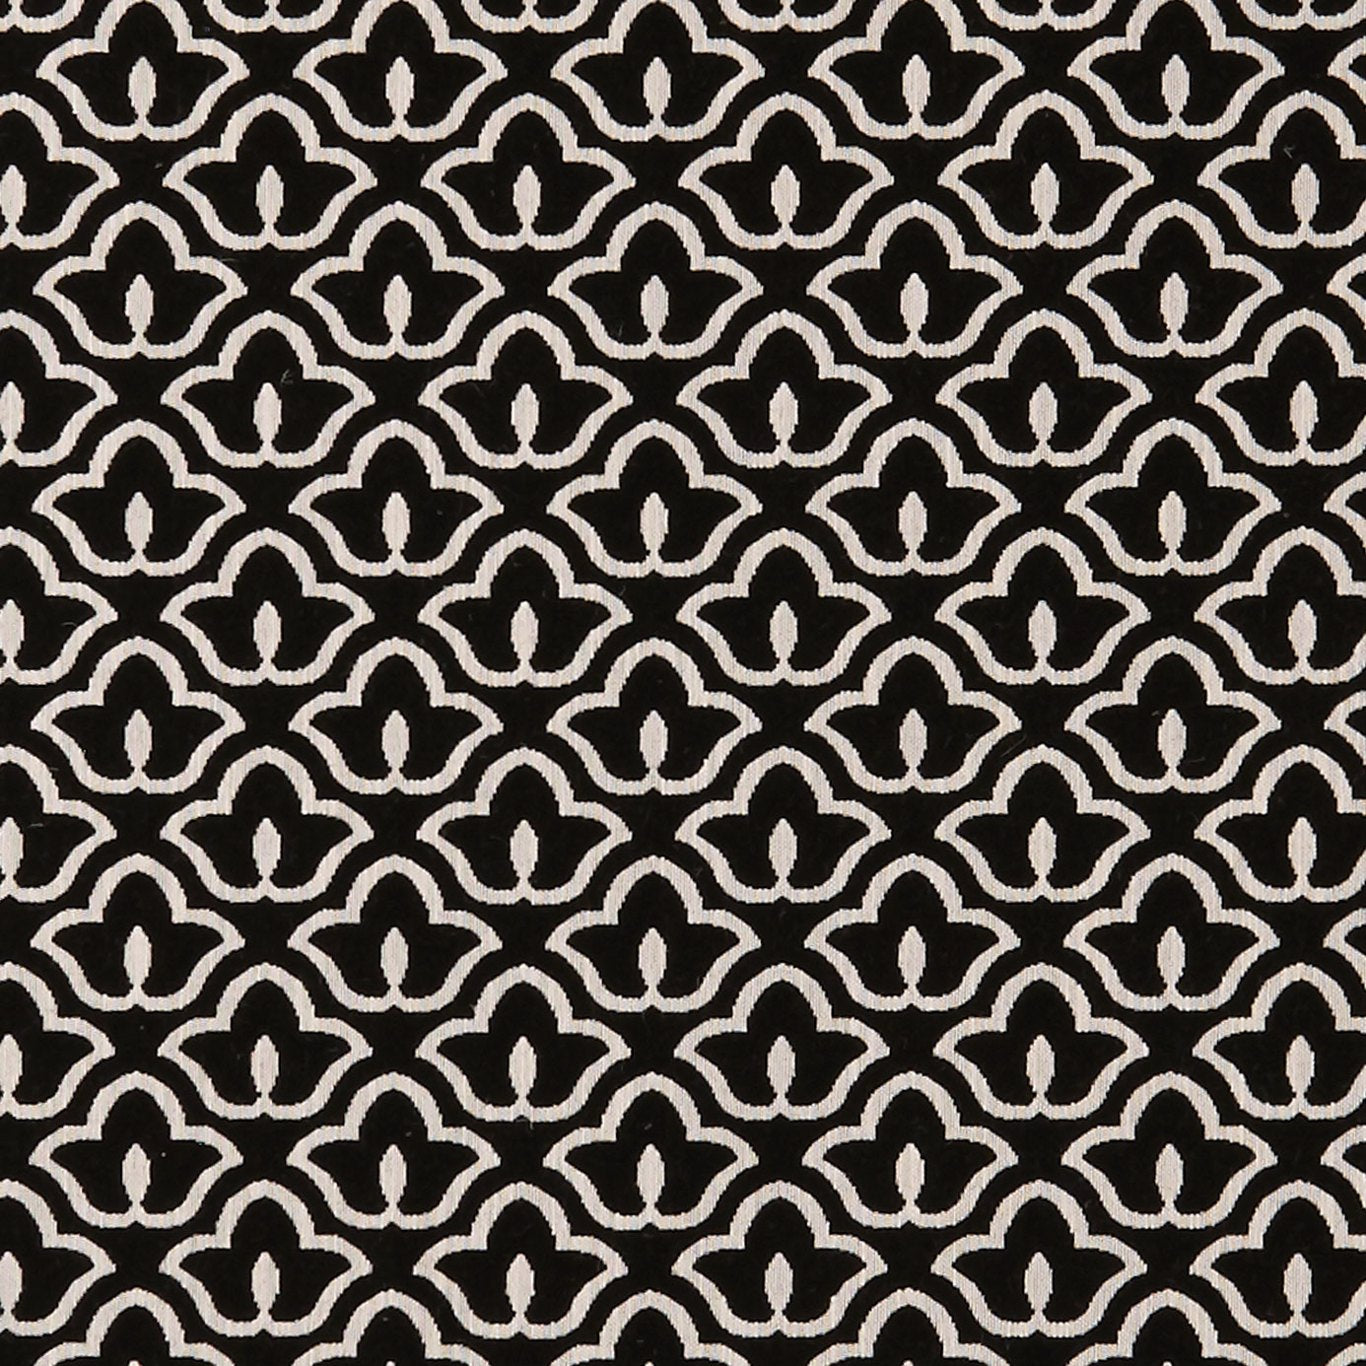 Bw1014 Fabric by Clarke & Clarke - F0887/01 - Black/White